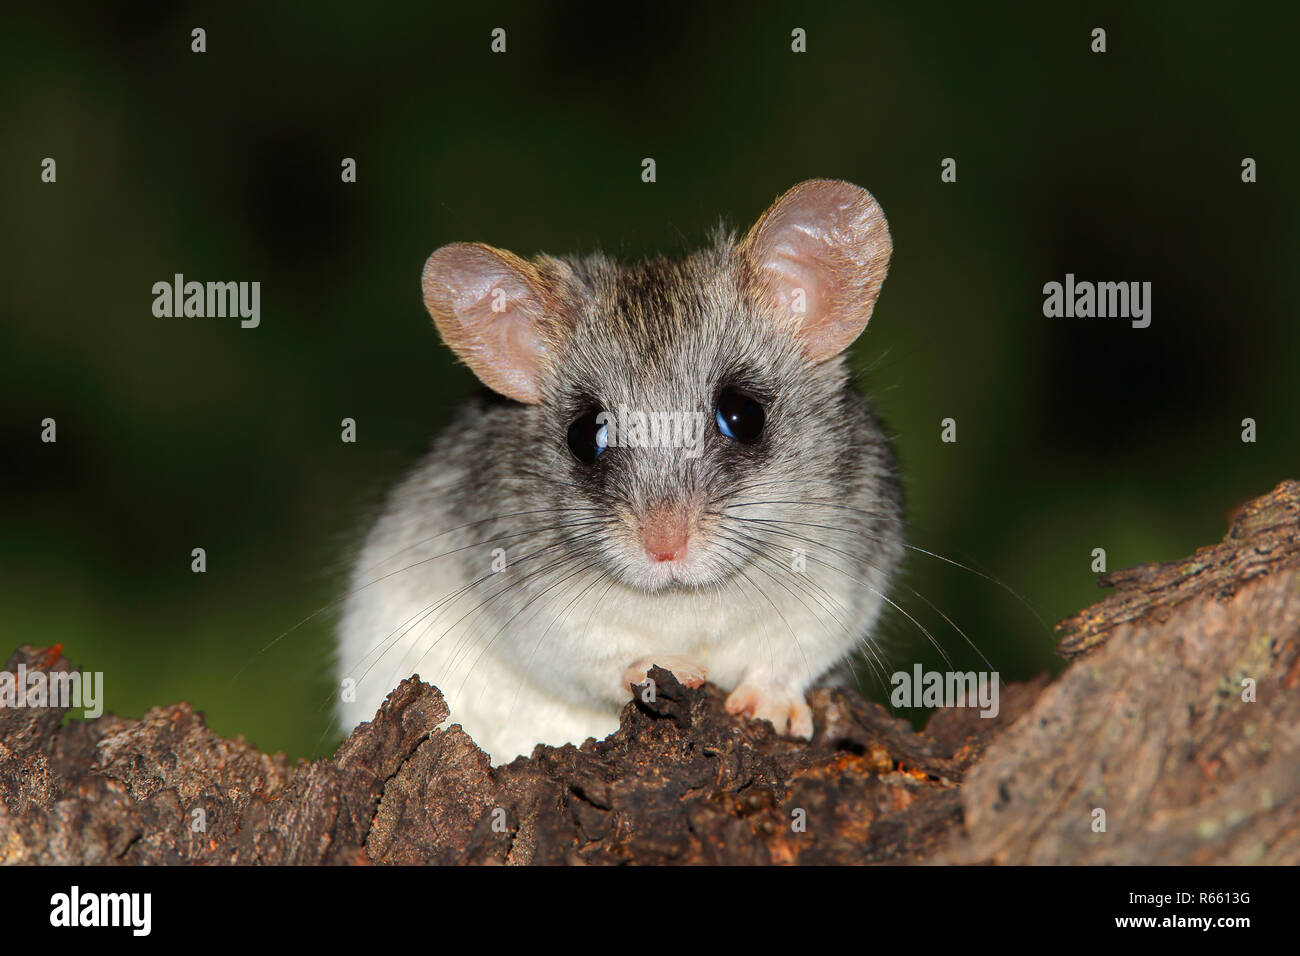 Acacia tree rat Stock Photo